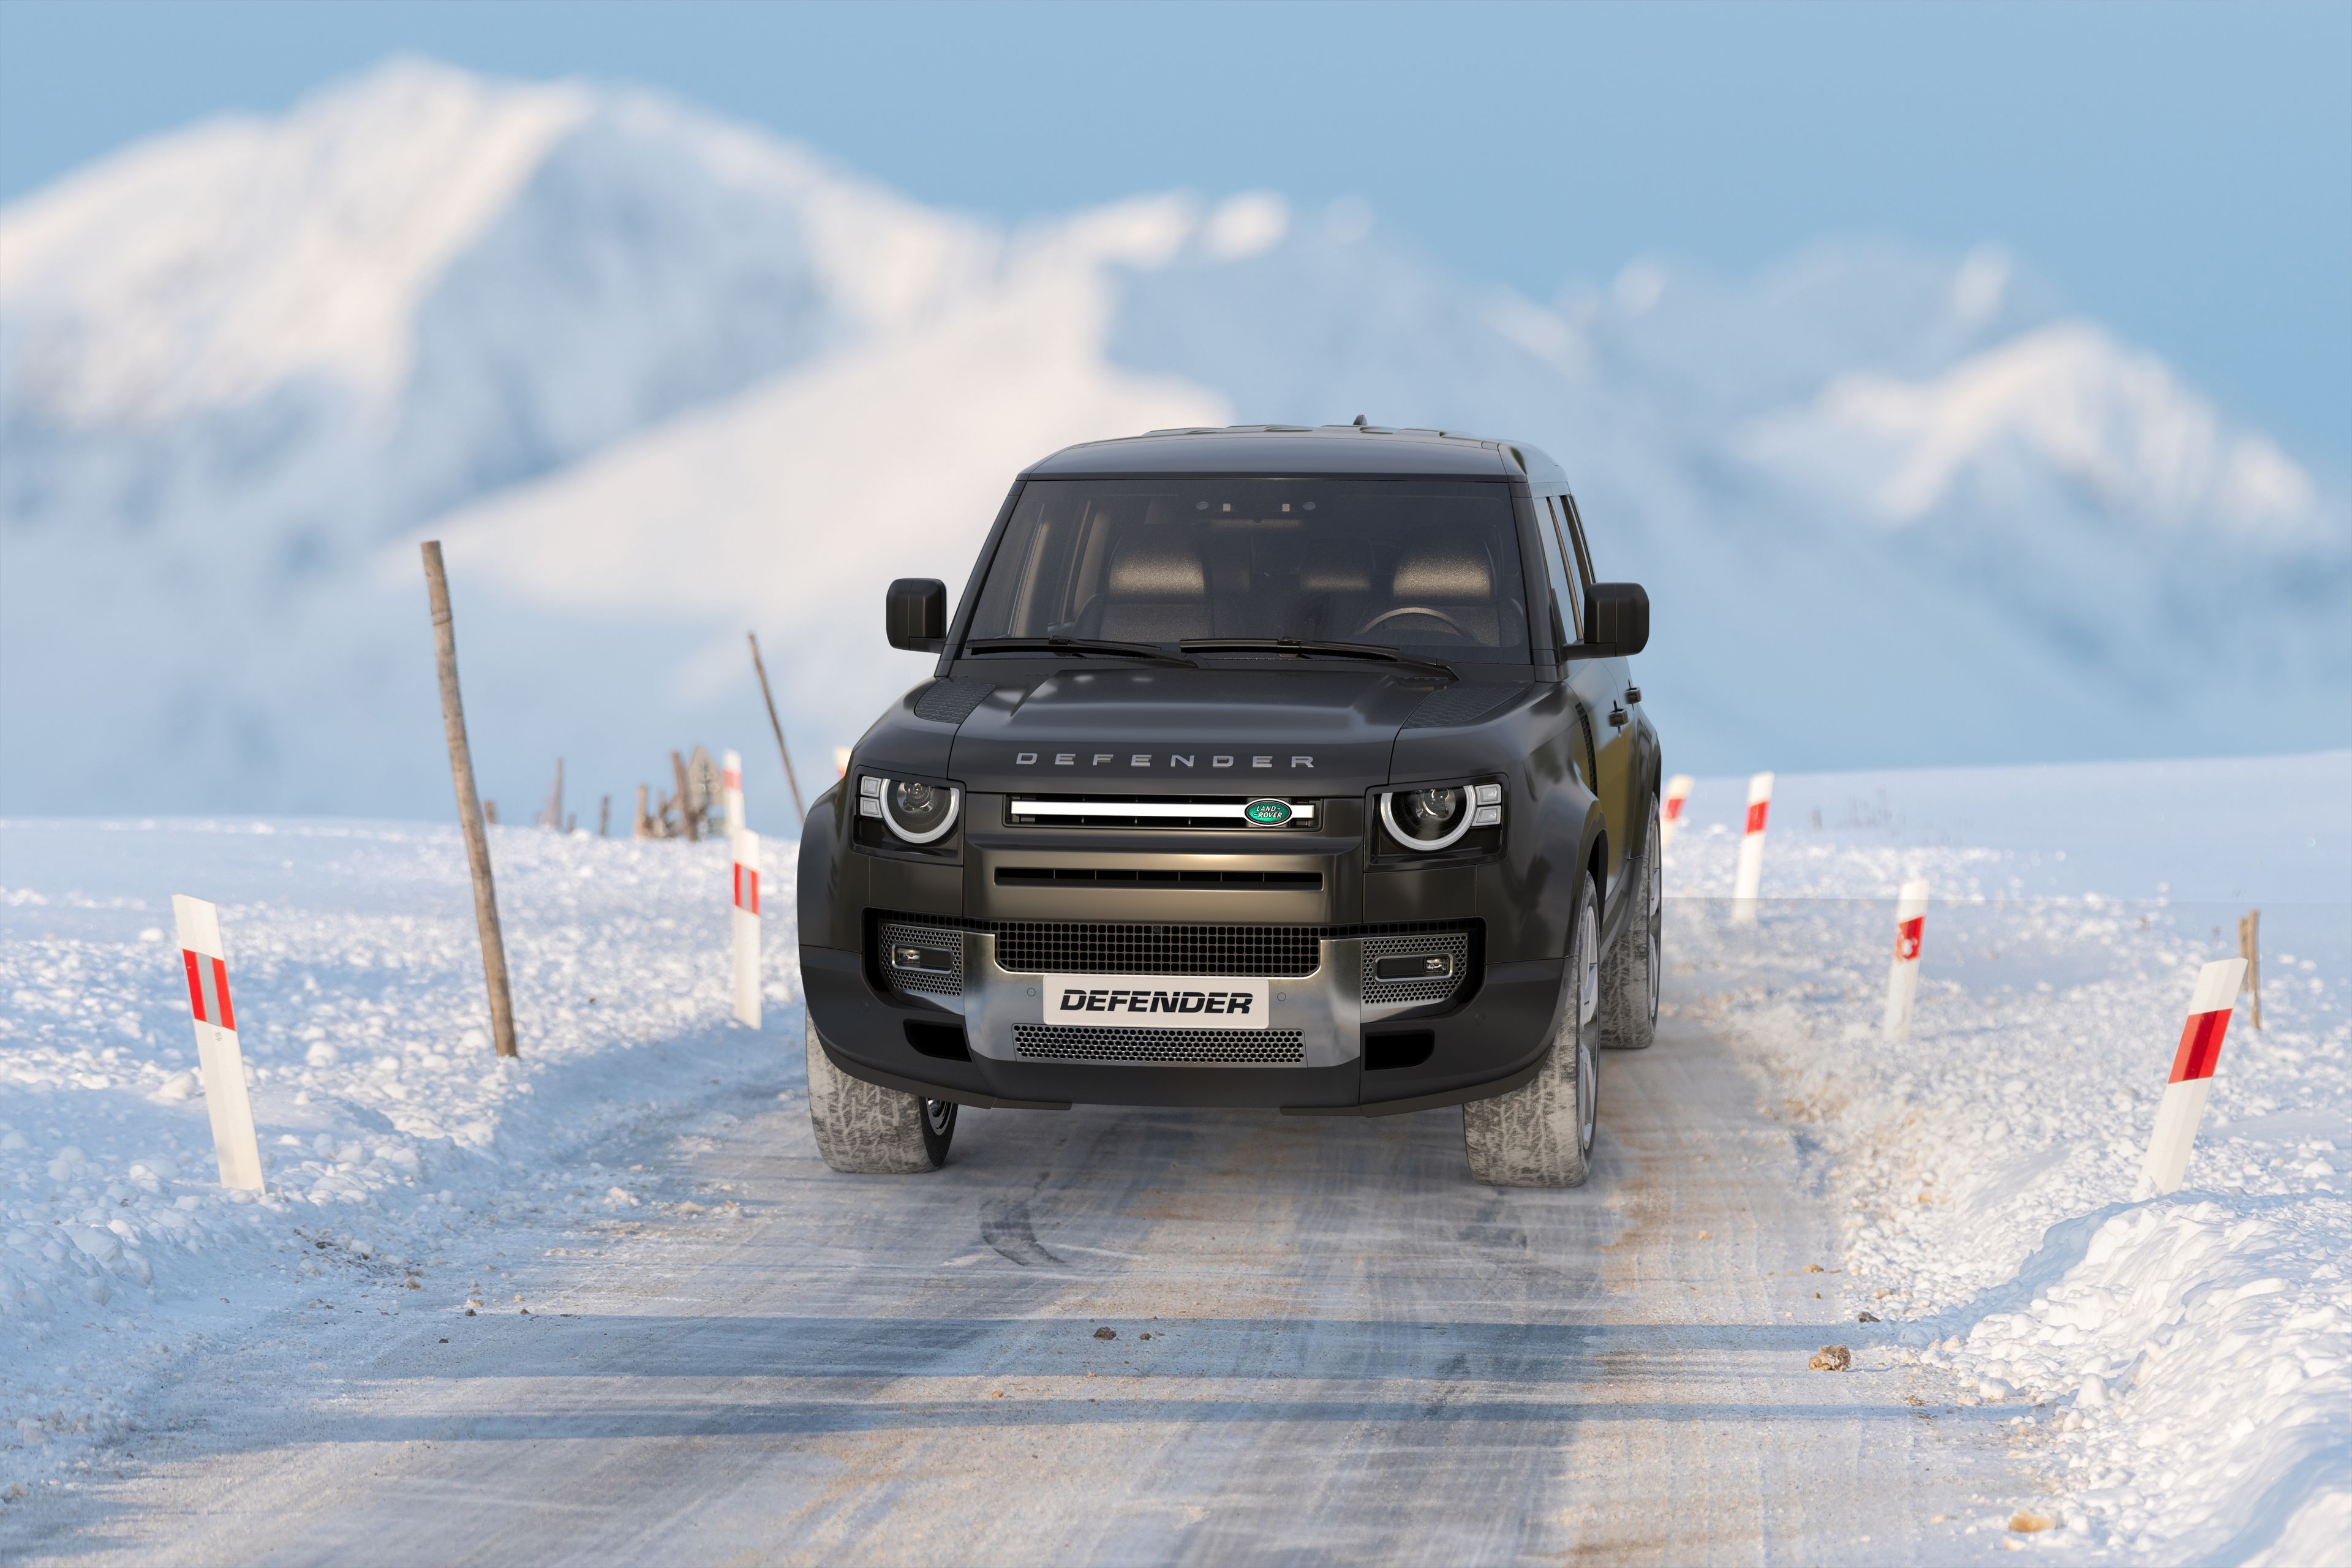 Land Rover Defender car rental in iceland